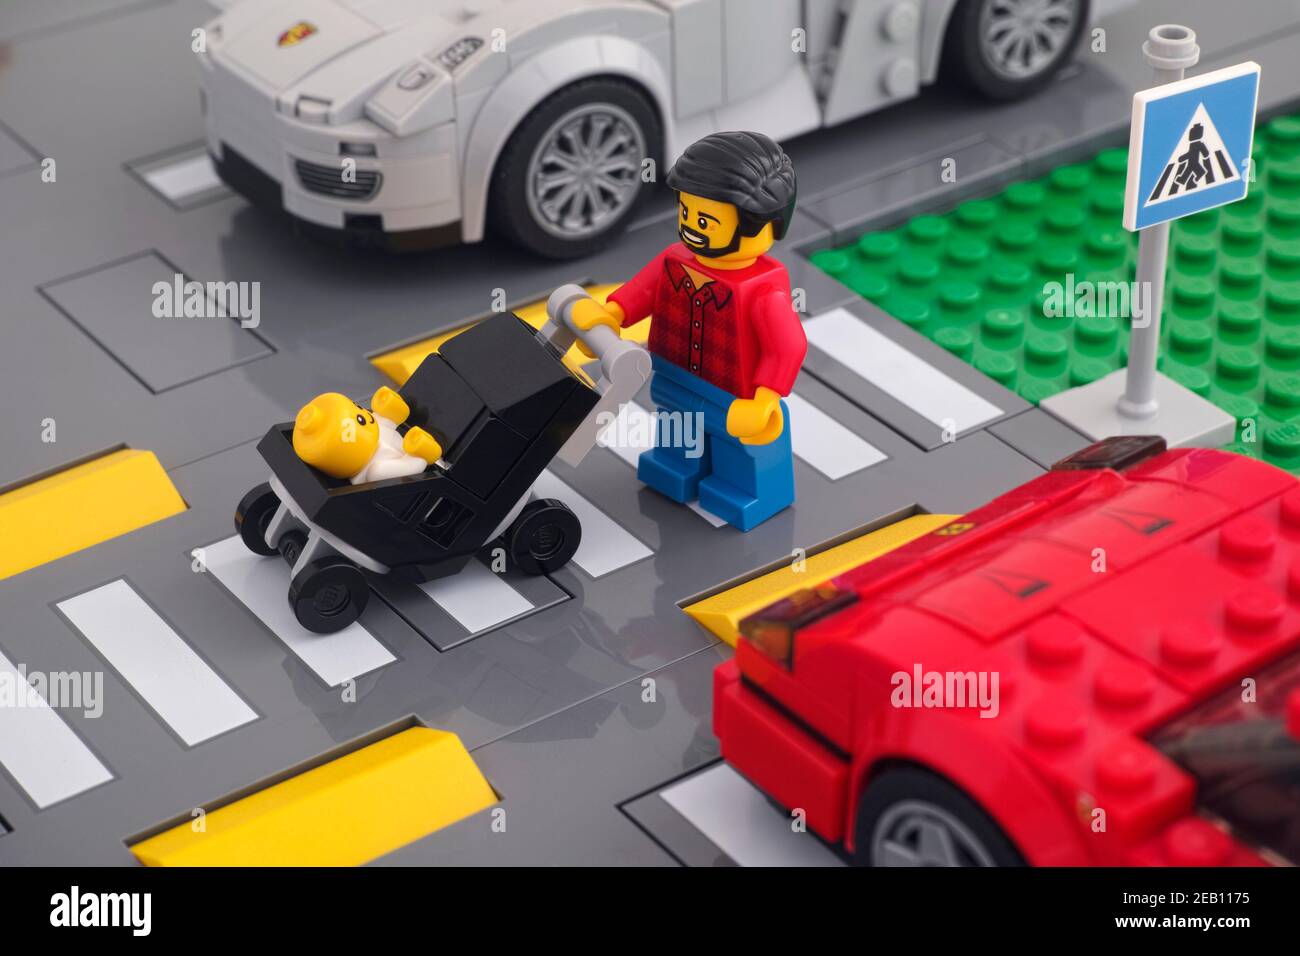 Tambov, Fédération de Russie - 07 février 2021 Lego minifigure qui pousse une poussette avec un bébé en elle traversant la route à l'aide d'un piéton Banque D'Images